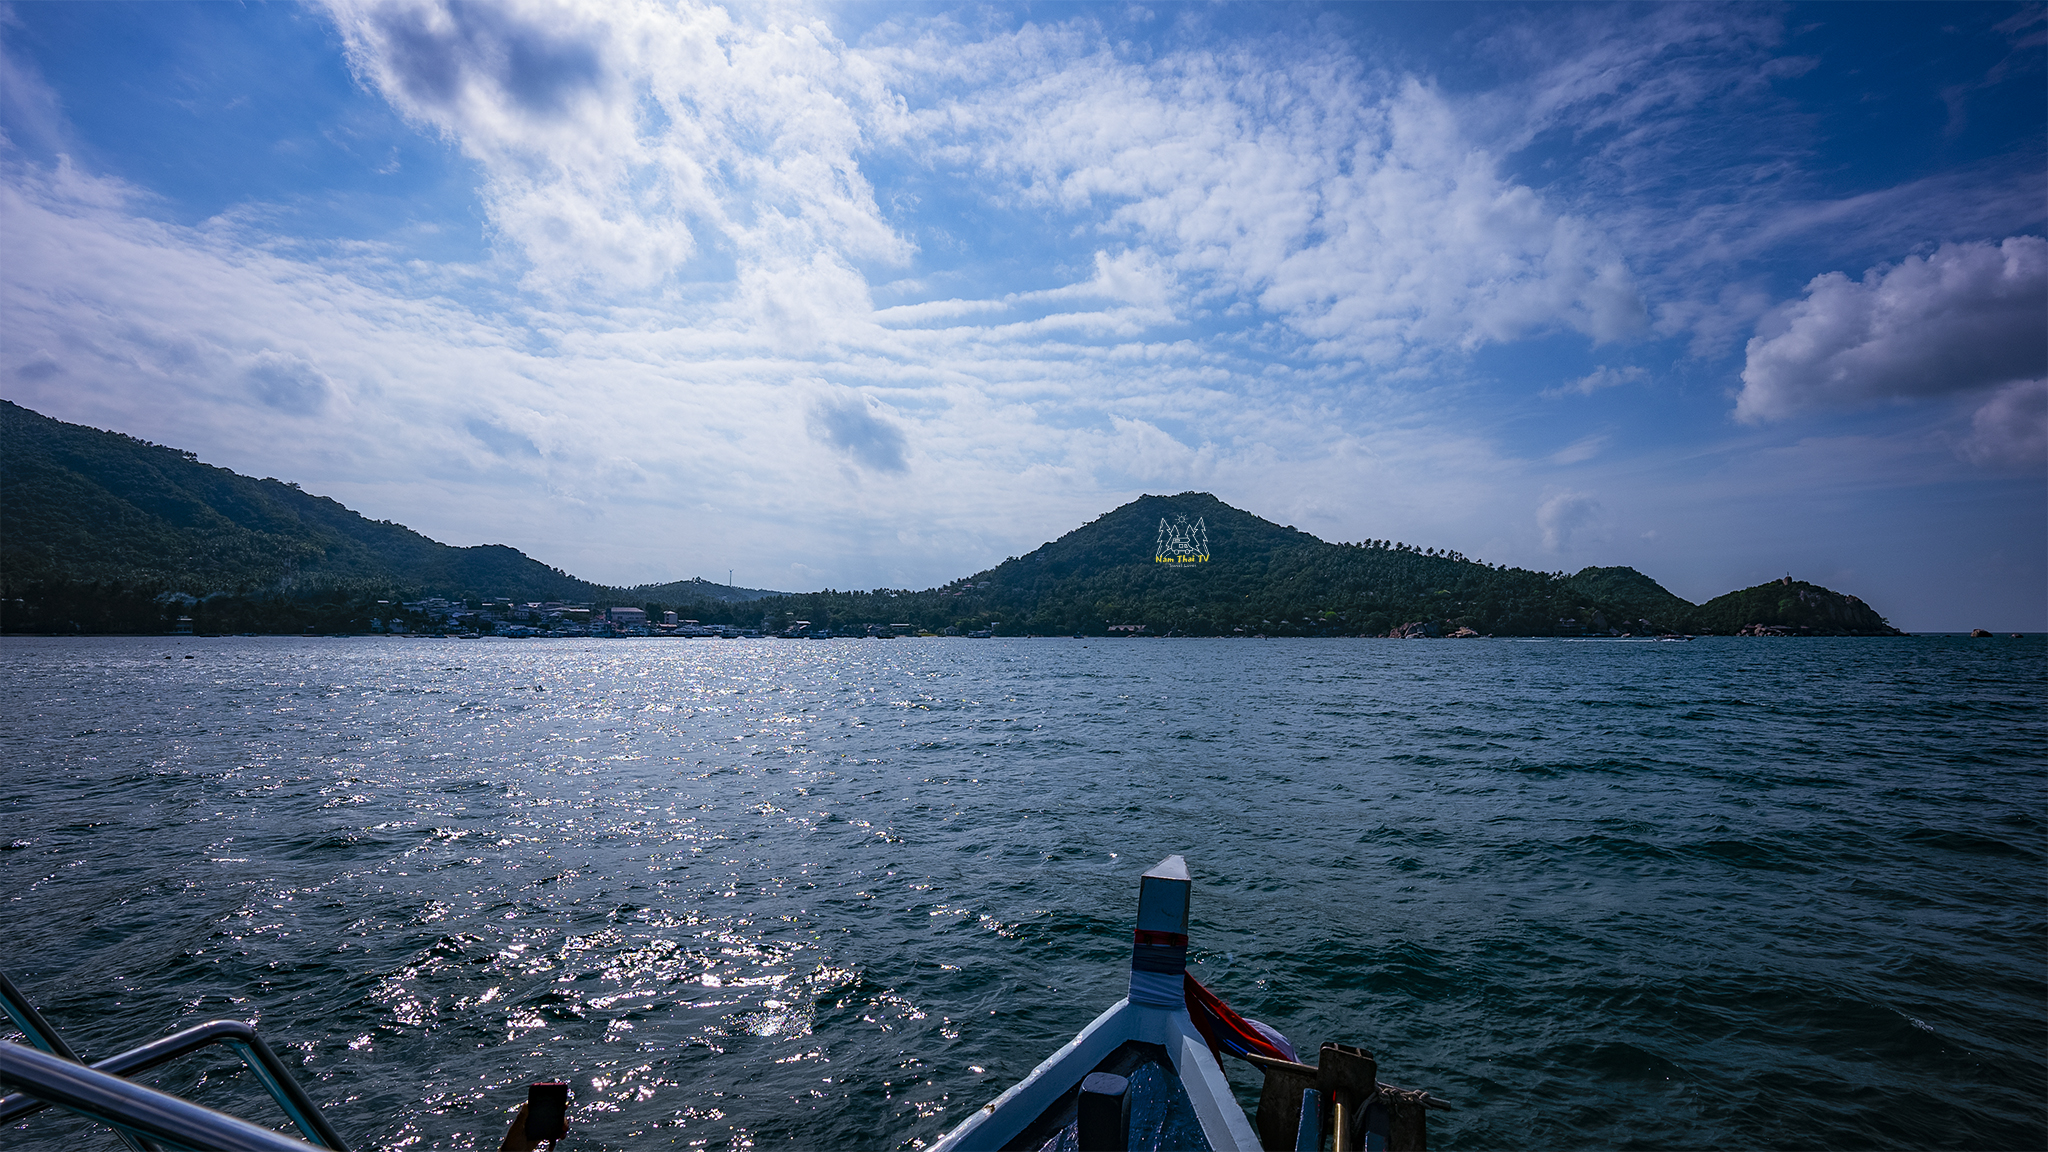 Tàu hướng về đảo Koh Tao